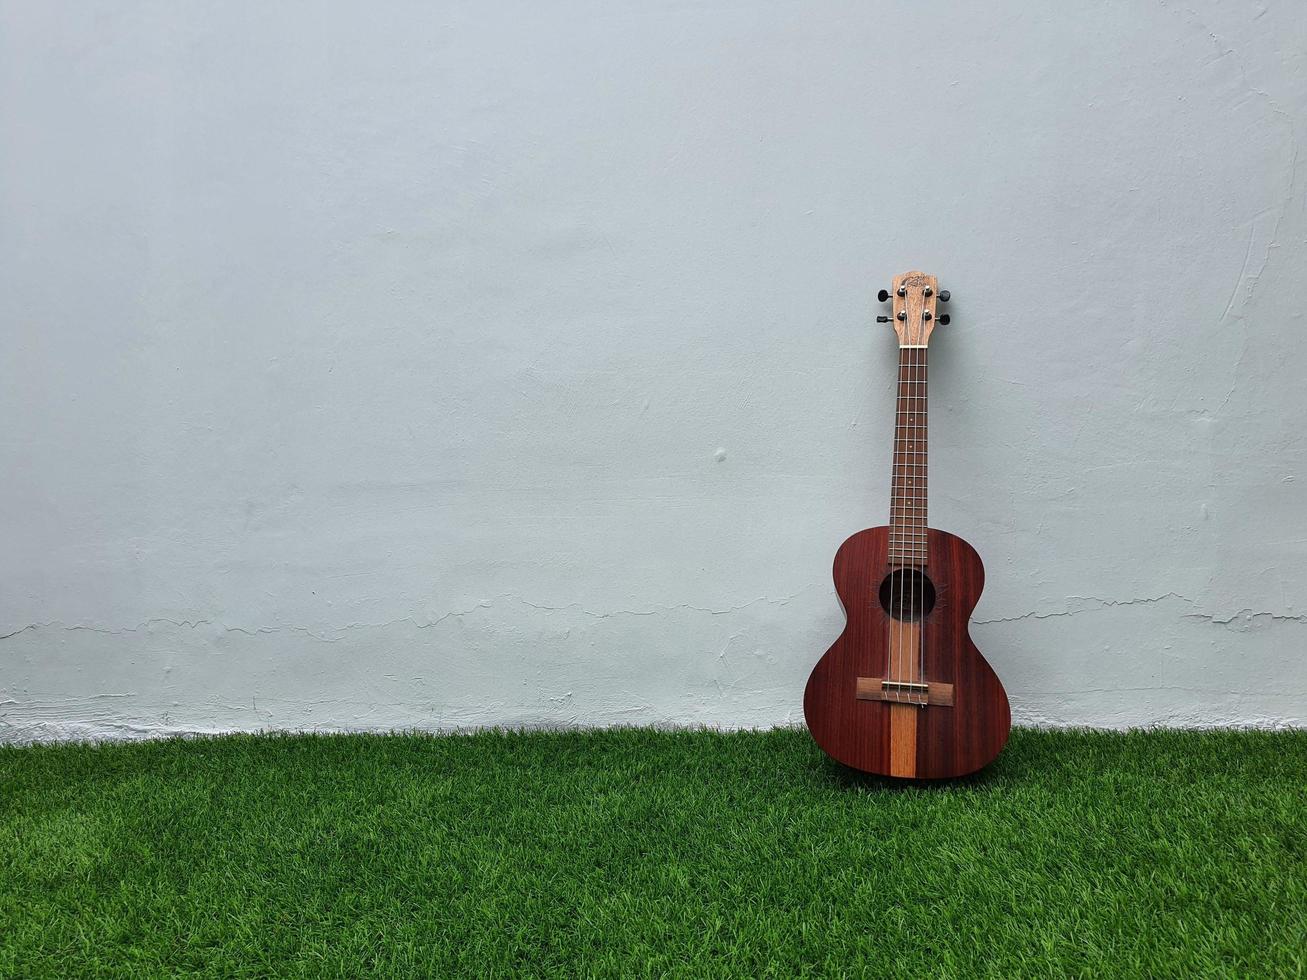 jacarta, indonésia em abril de 2022. este ukulele marrom escuro da marca my leho tem boa qualidade e um som alto e melodioso foto